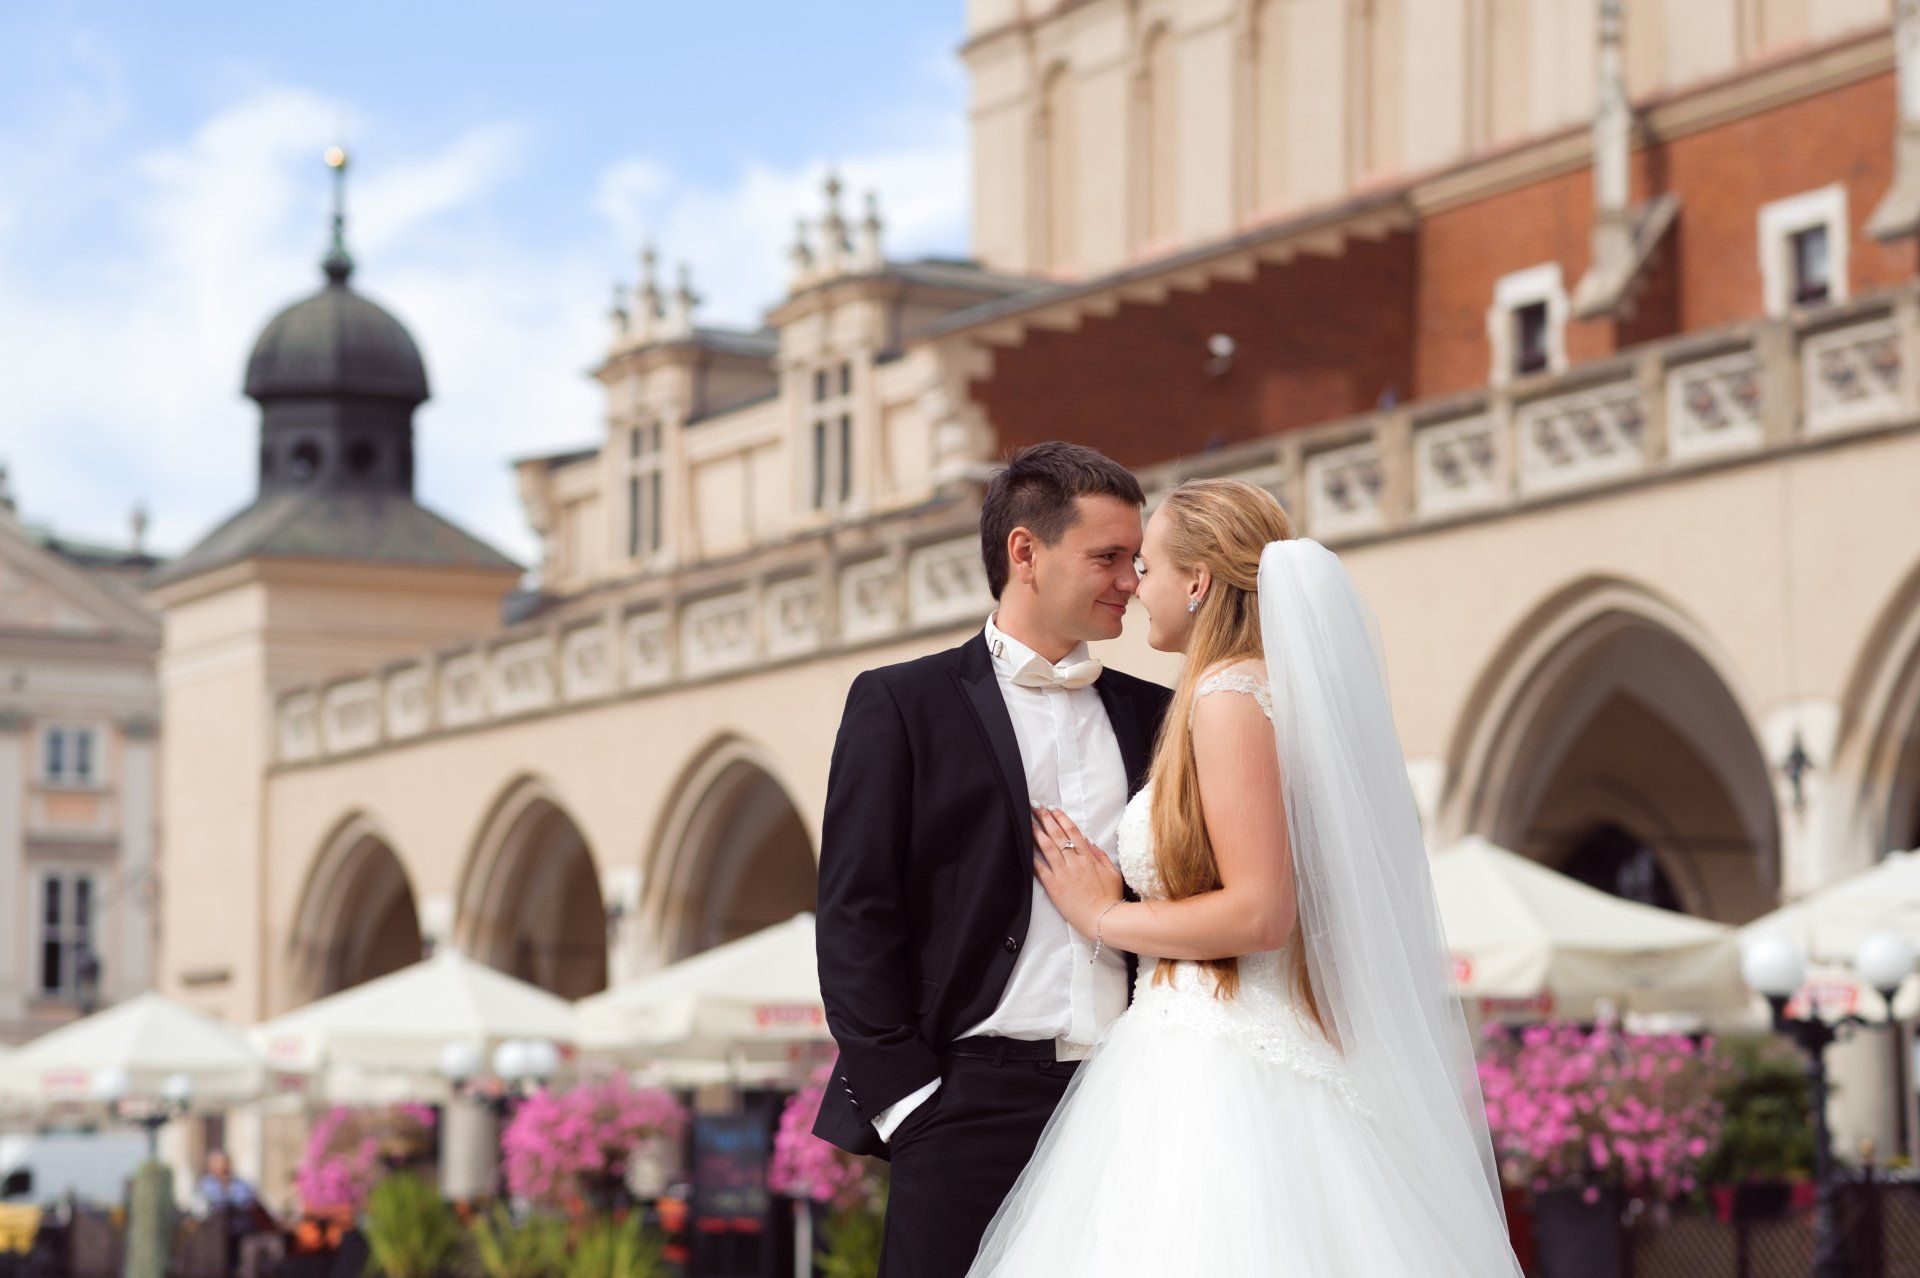 Bruiloft, trouwen in Italië, videograaf, trouwjurk, trouwens met je partner, trouwen in het buitenland, het ja woord geven